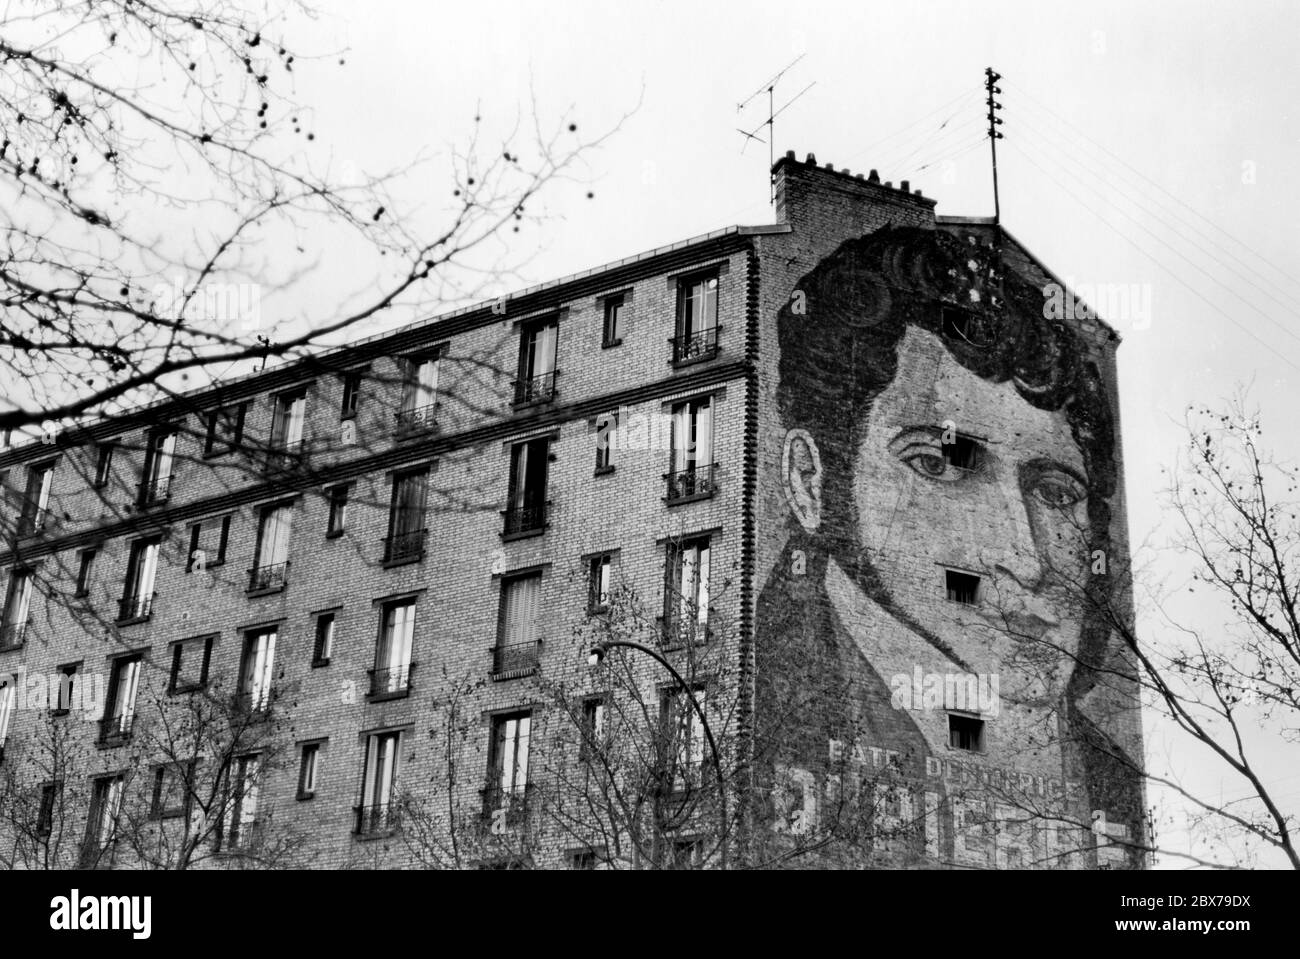 Enseigne géante peinte à la main publicitaire dentifrice sur le côté d'un immeuble d'appartements dans la banlieue de Paris, France Banque D'Images